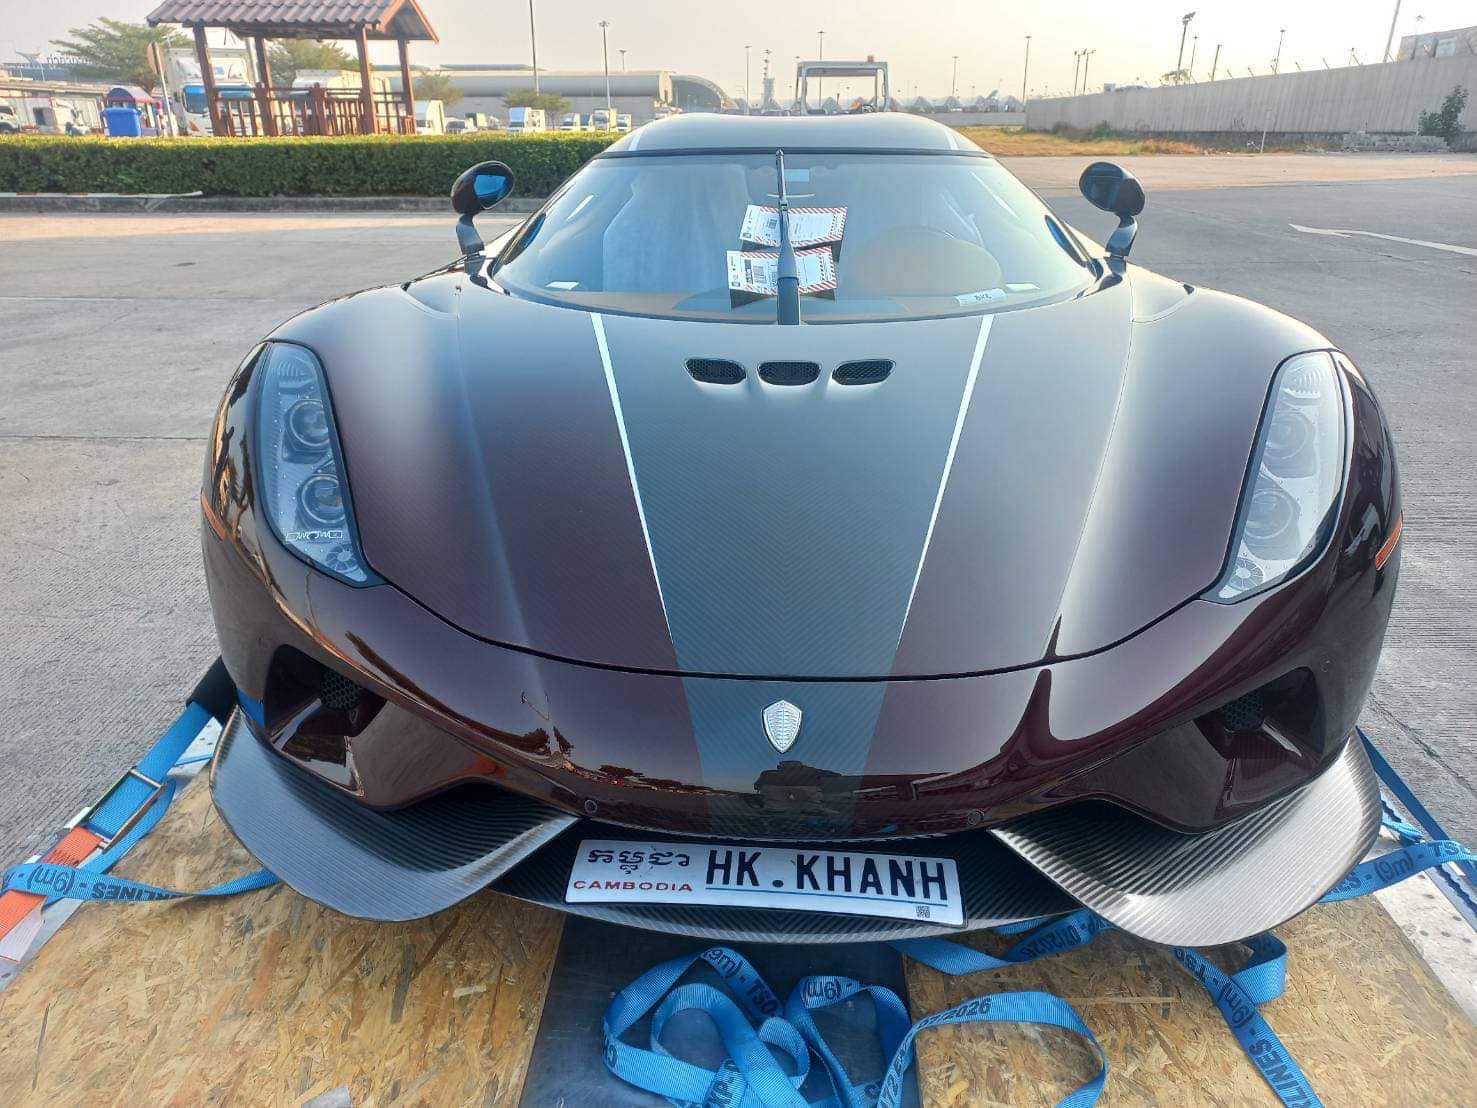 Livestream khoe dàn xe khủng, Hoàng Kim Khánh chia sẻ: Koenigsegg Regera đã về, sẽ sớm đưa tất cả ''xế cưng'' đi tour tới Nha Trang - ảnh 5